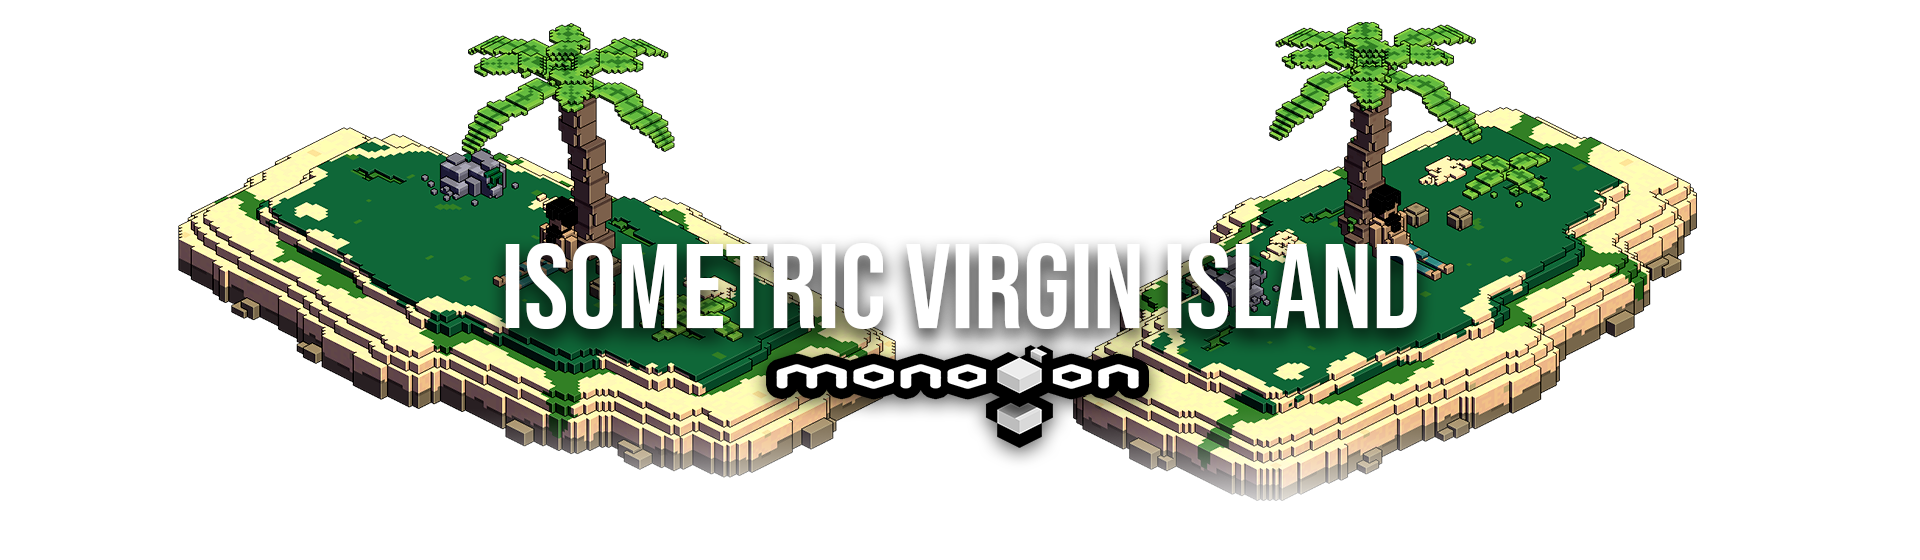 Isometric Virgin Island